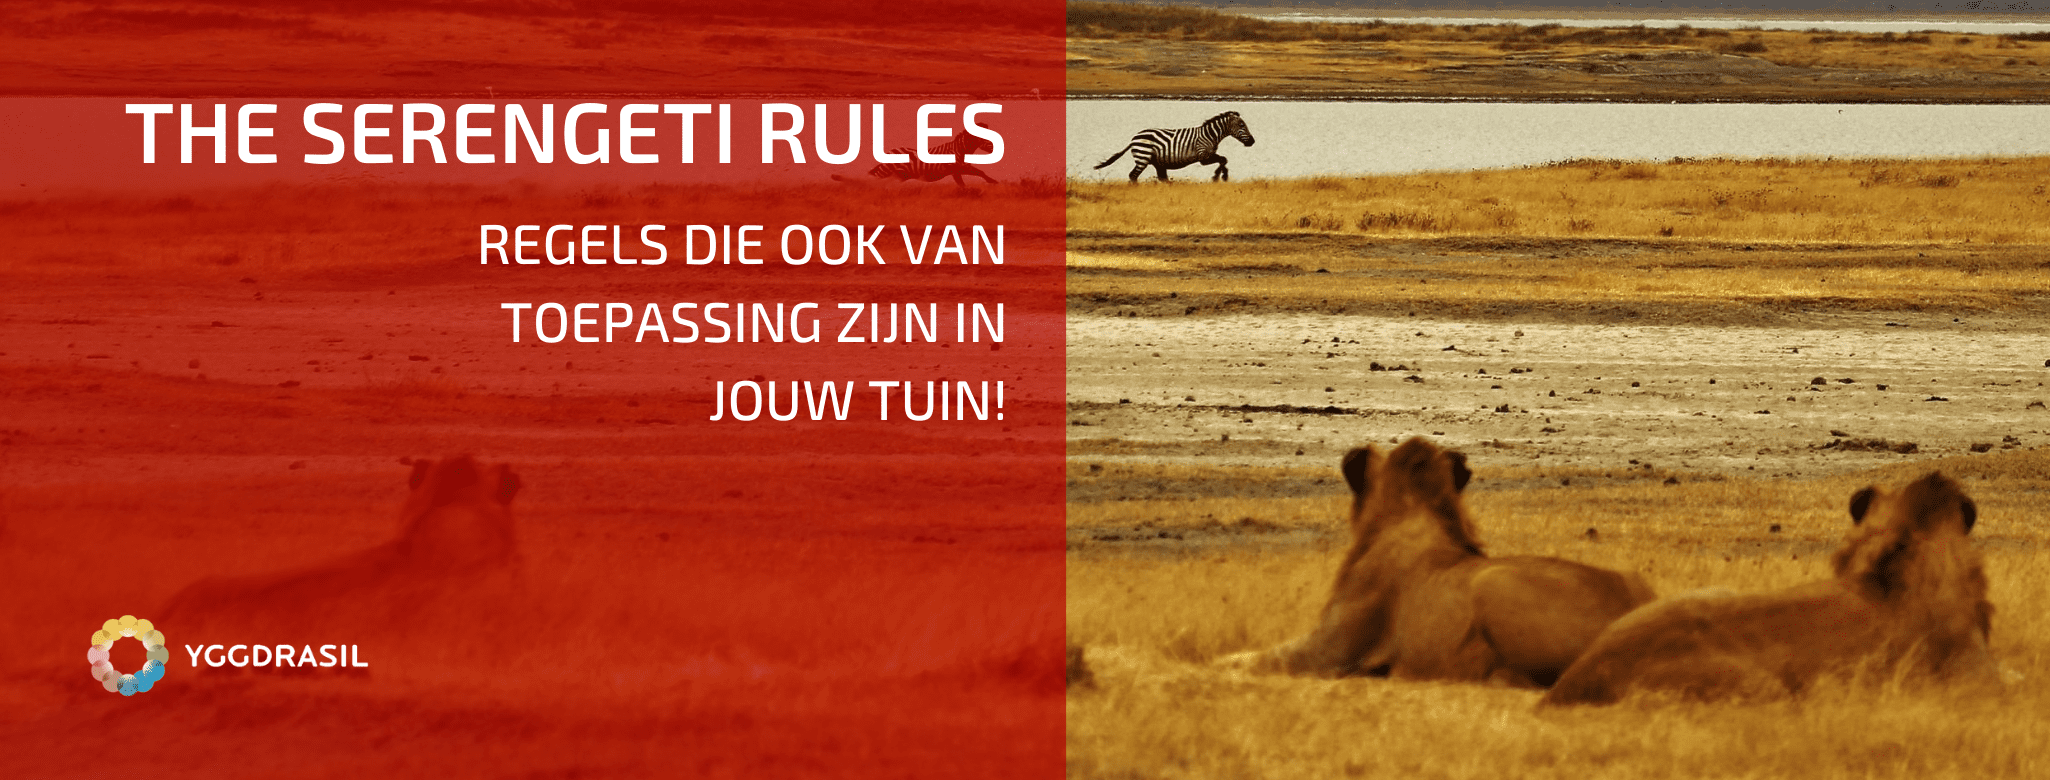 The Serengeti Regels: Van Toepassing in Jouw Tuin?